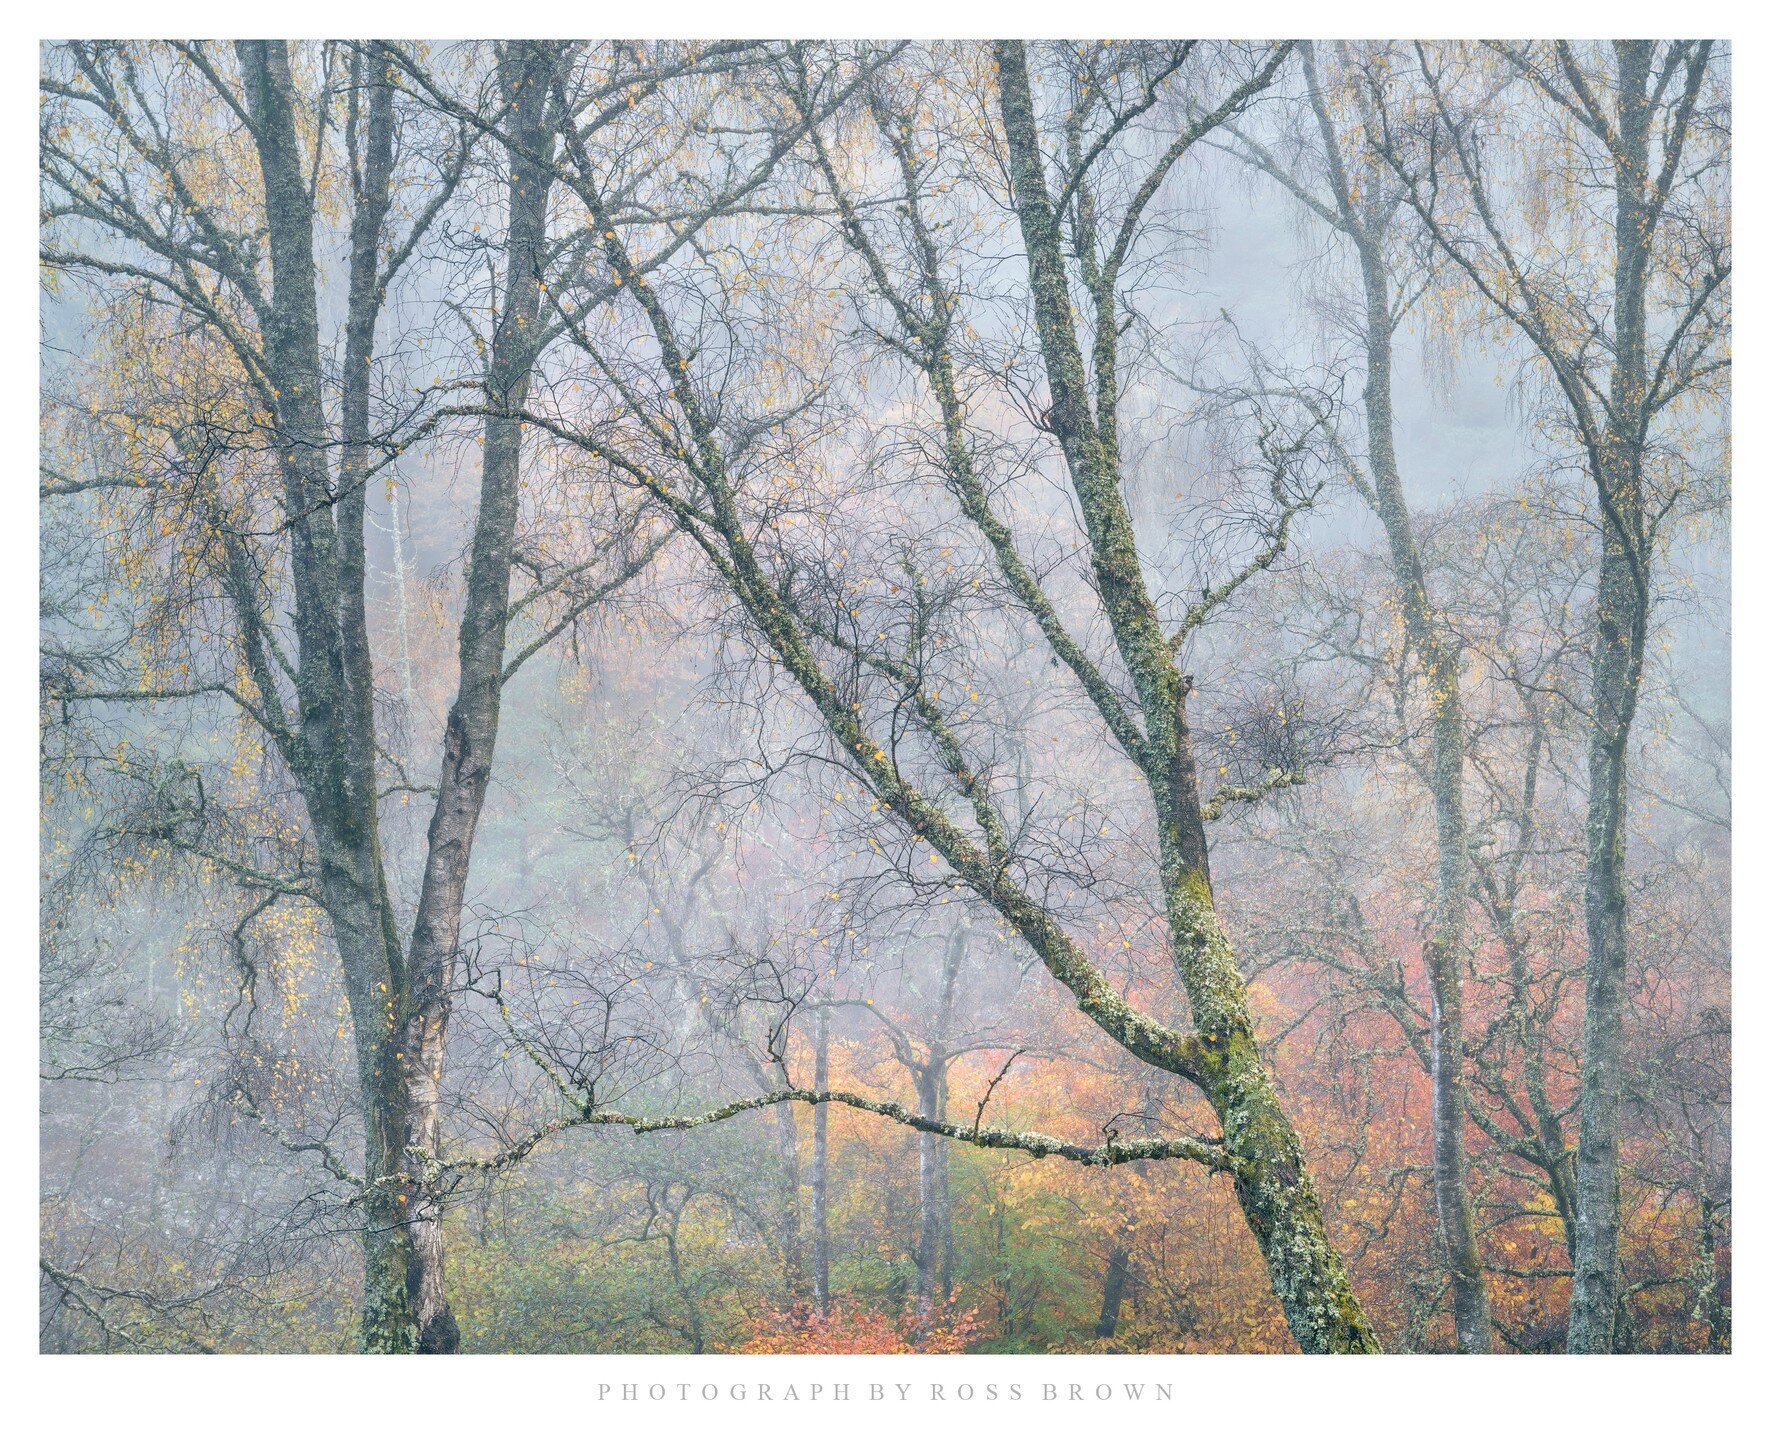 Silver Birch, Tummel Woods, Perthshire, November 2023

#nature #naturephotography #landscapephotography #natgeohub #natgeowild #natgeolandscape #JustGoShoot #InstaGood #InstaPhoto #PicOfTheDay #PhotoOfTheDay #Photogram #Capture#PhotographyDaily #Phot